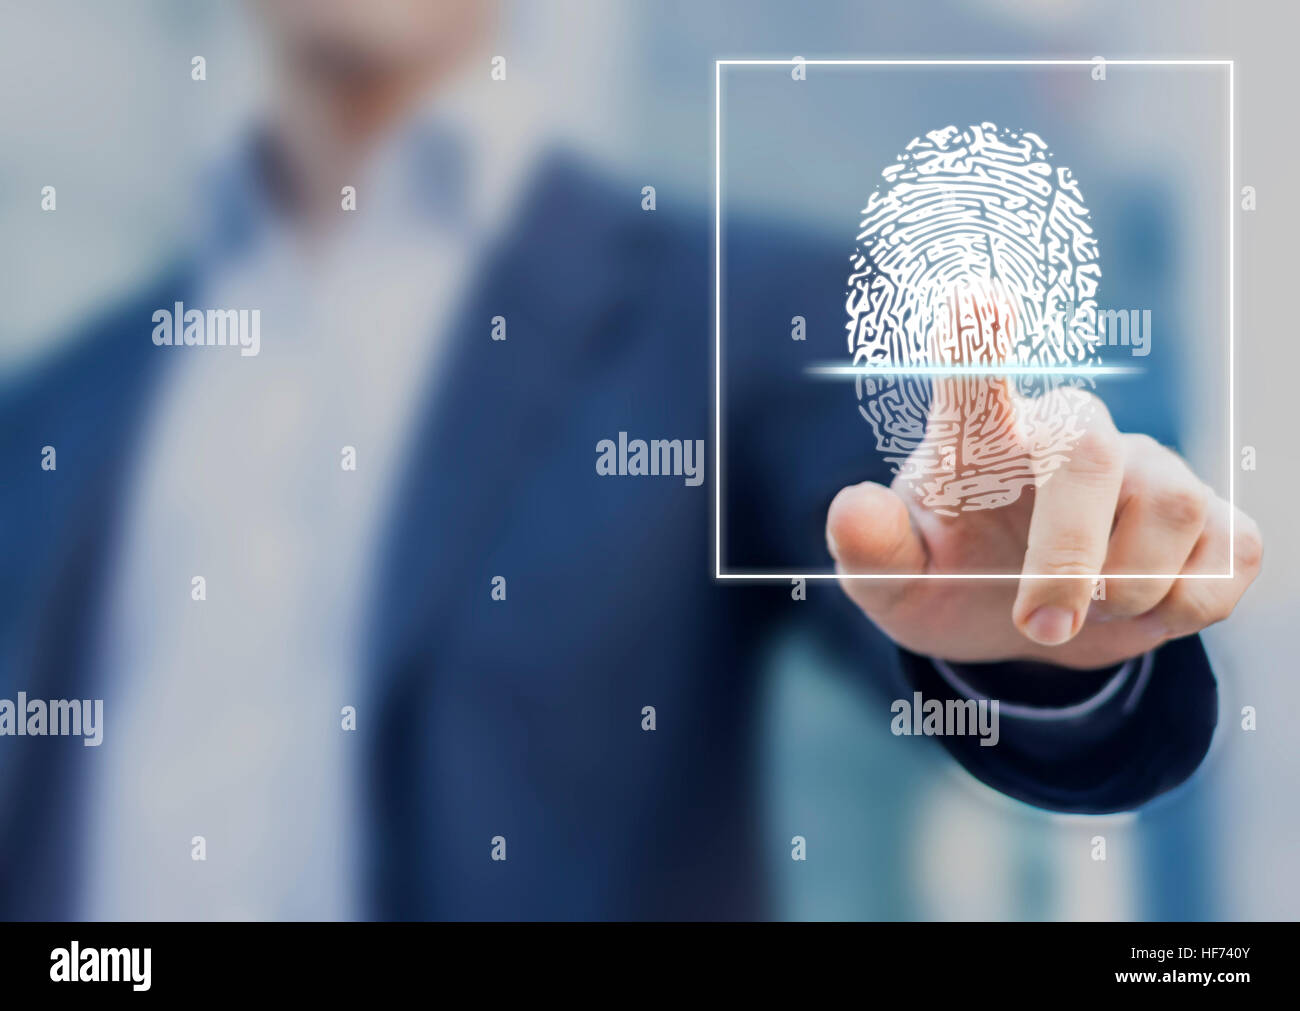 Scansione delle impronte digitali fornisce accesso di sicurezza con identificazione biometrica, persona toccando lo schermo con il dito in background Foto Stock